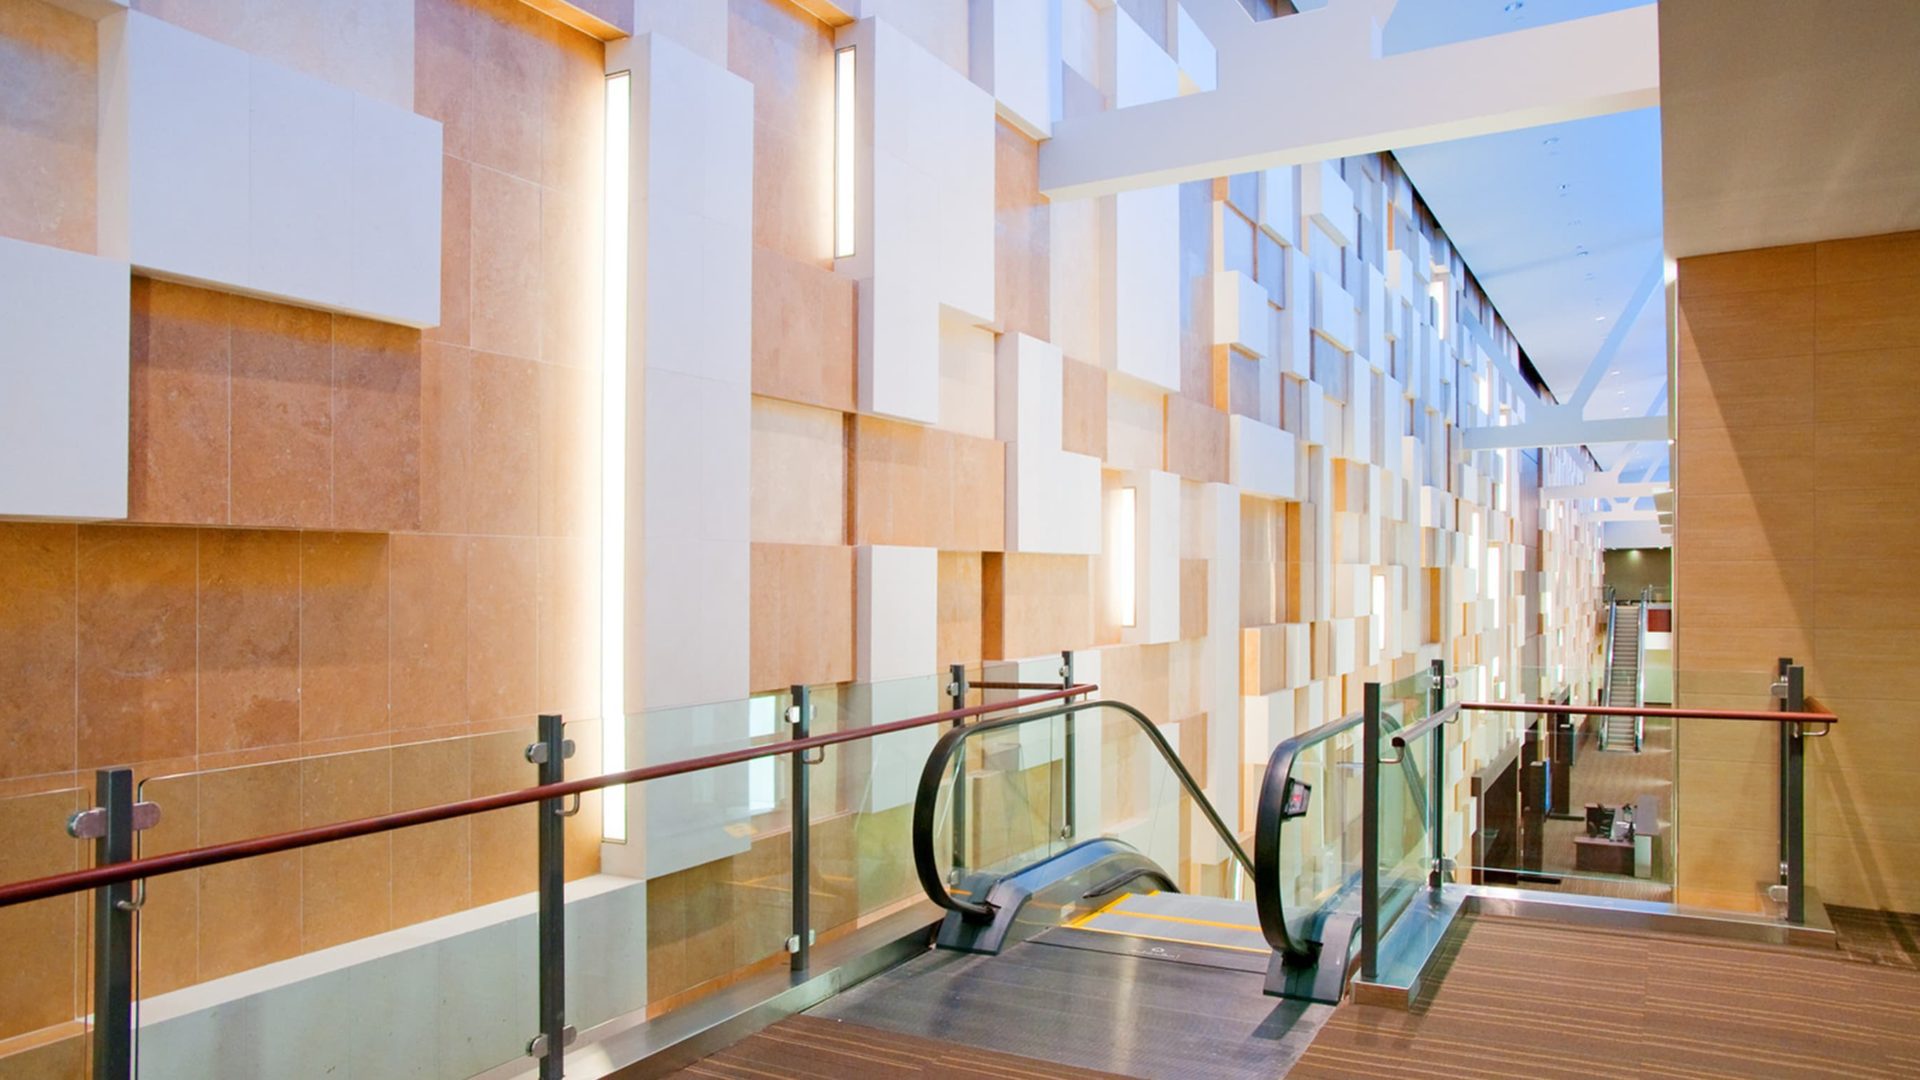 beanfield centre building interior escalator